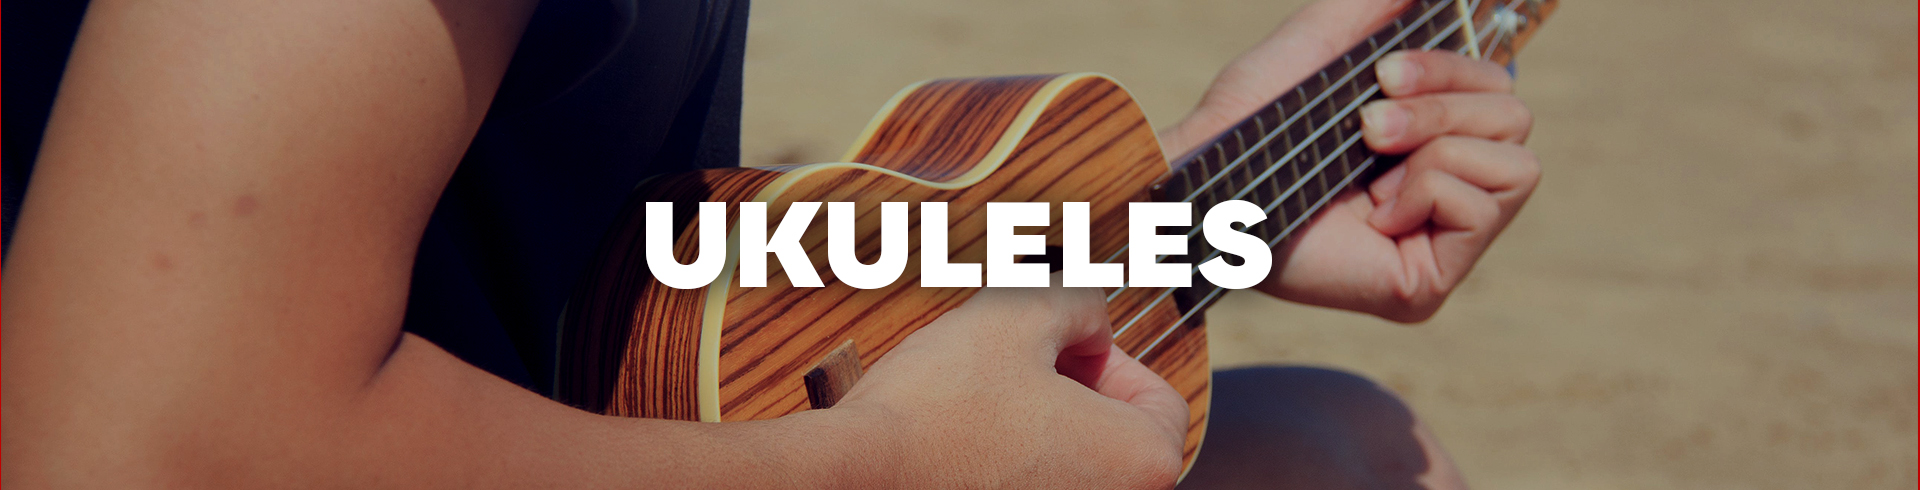 ukeleles paruno ukelele ukulele instrumento cuerdas